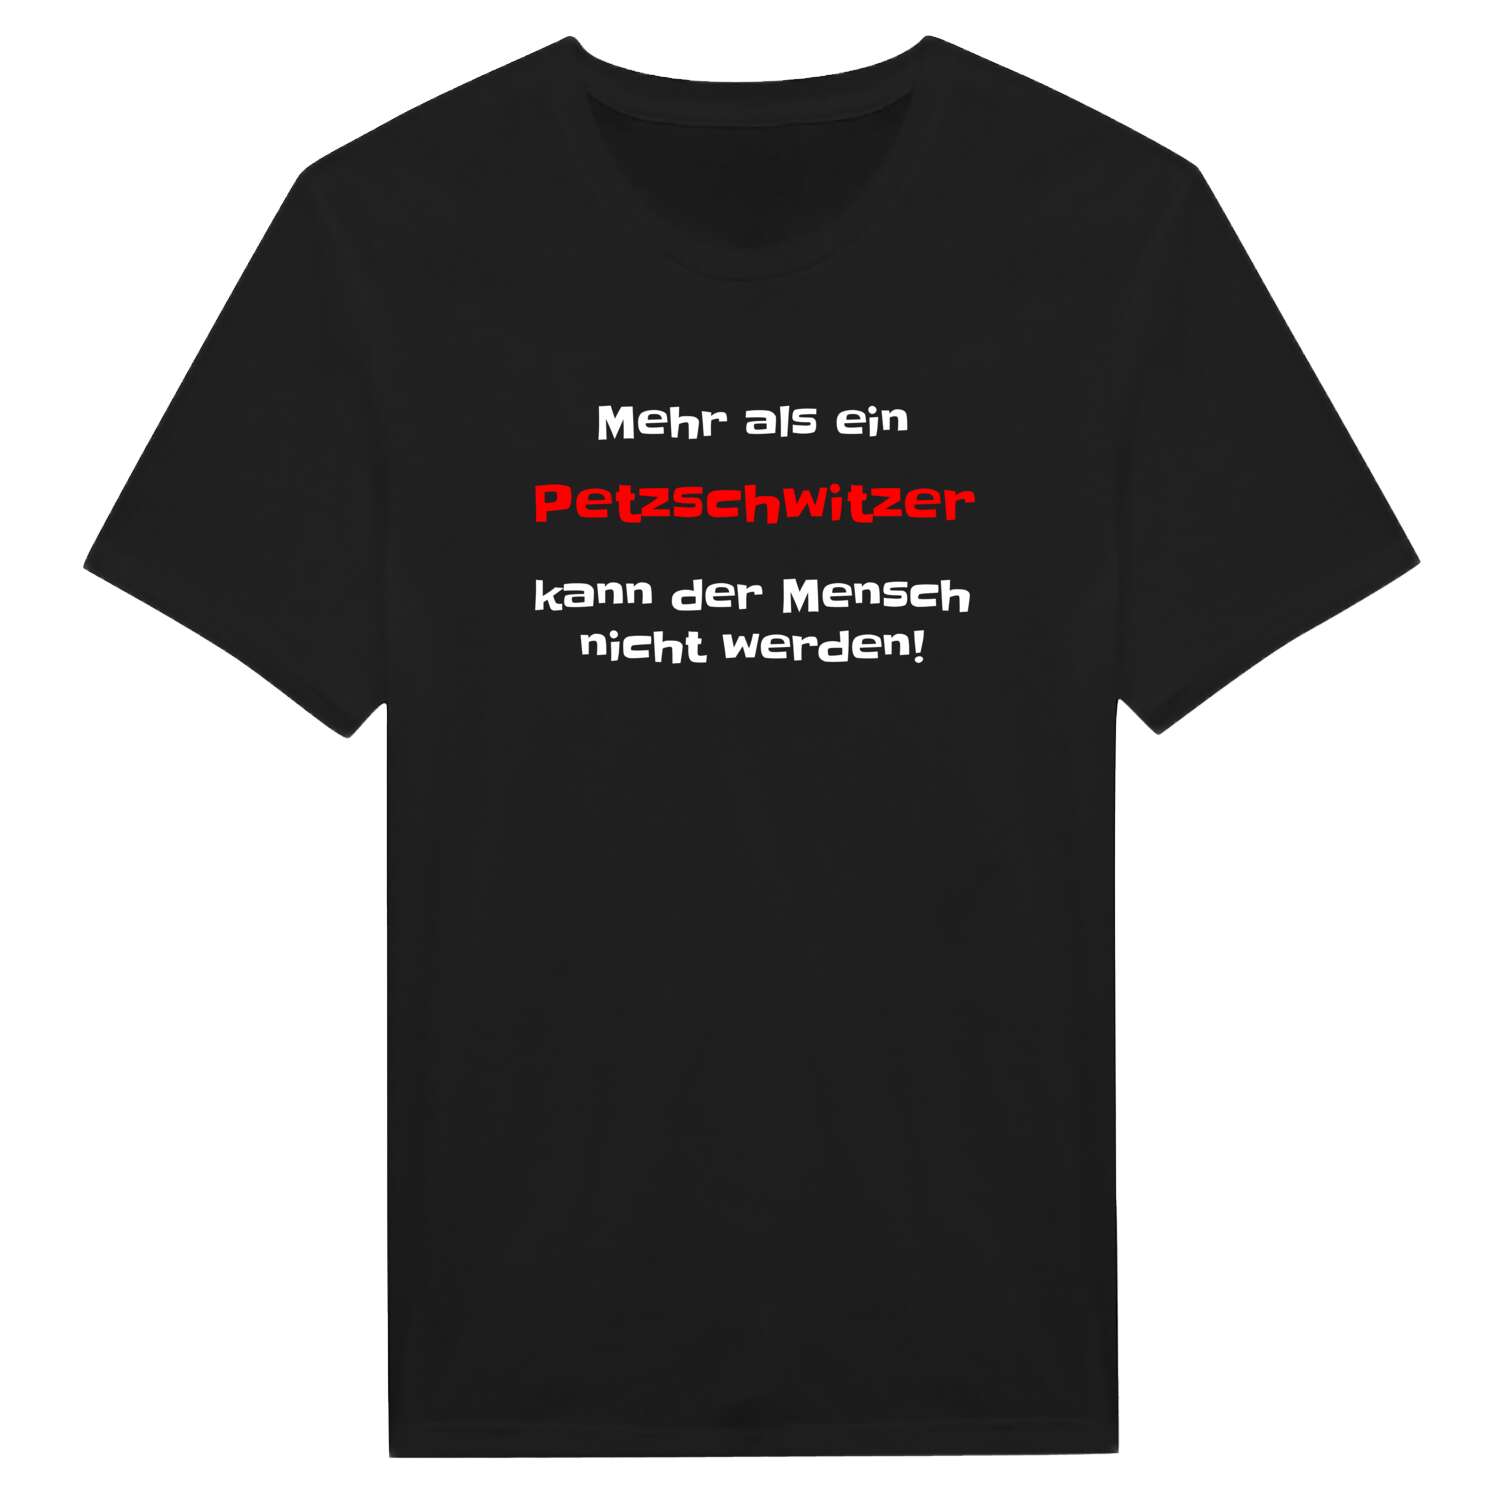 Petzschwitz T-Shirt »Mehr als ein«